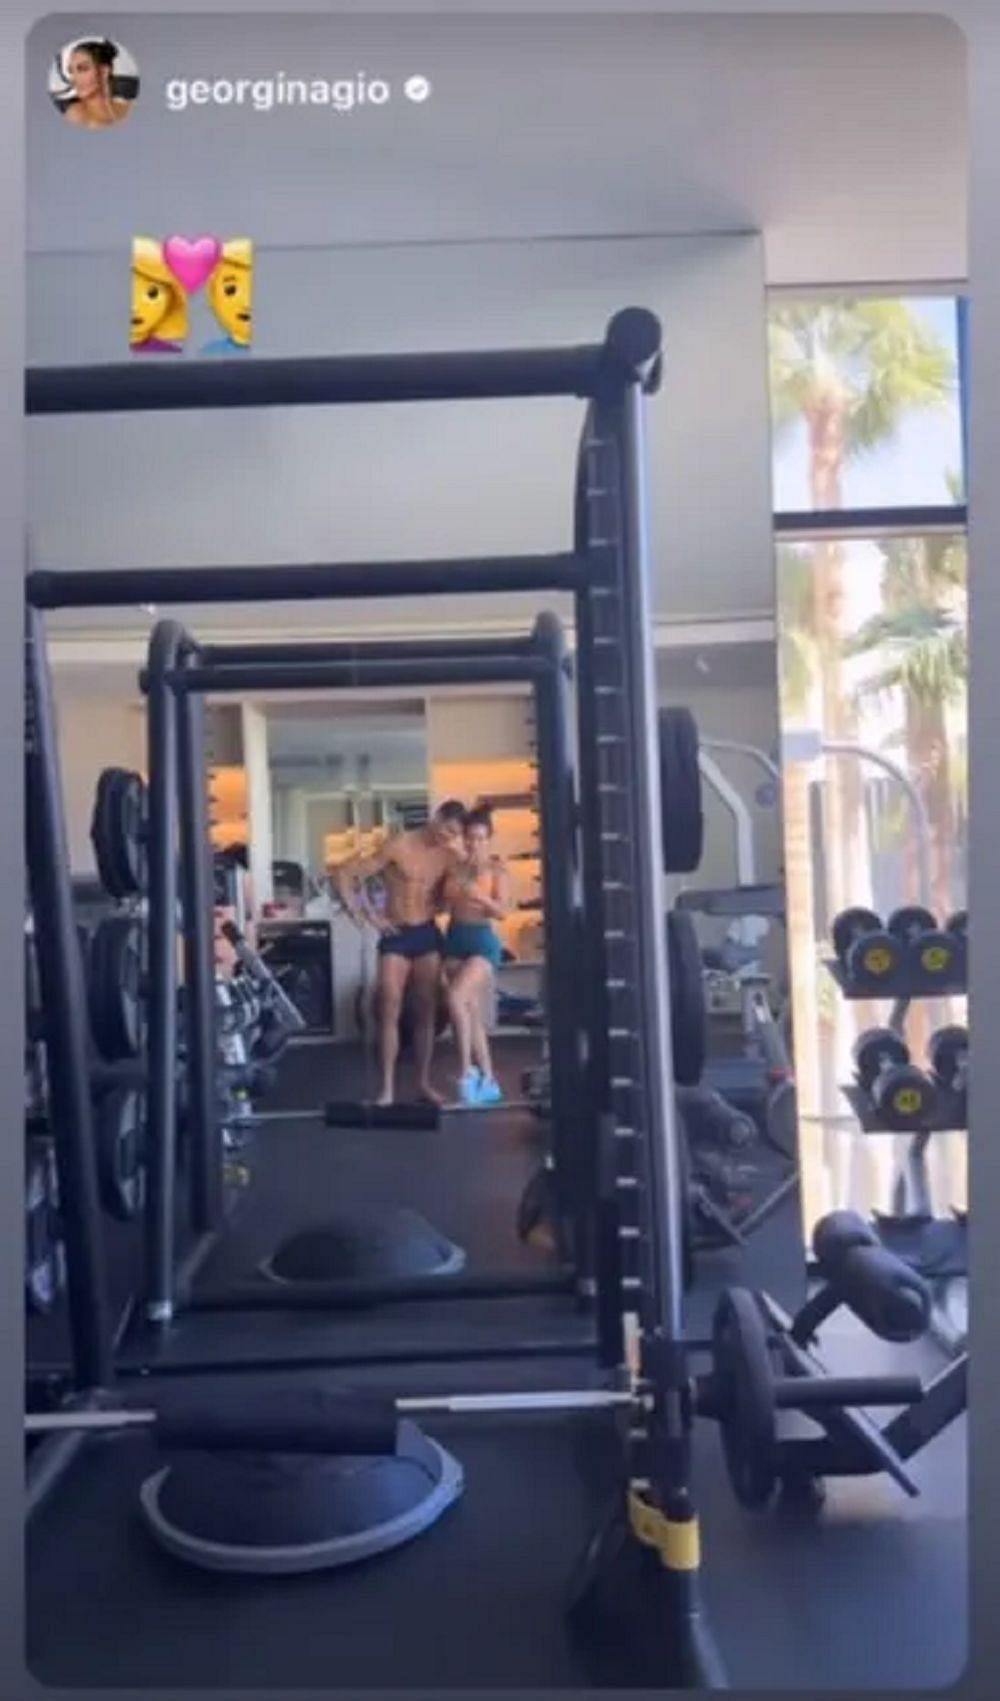 Cristiano Ronaldo and Georgina Rodriguez work out (via TalkSport)